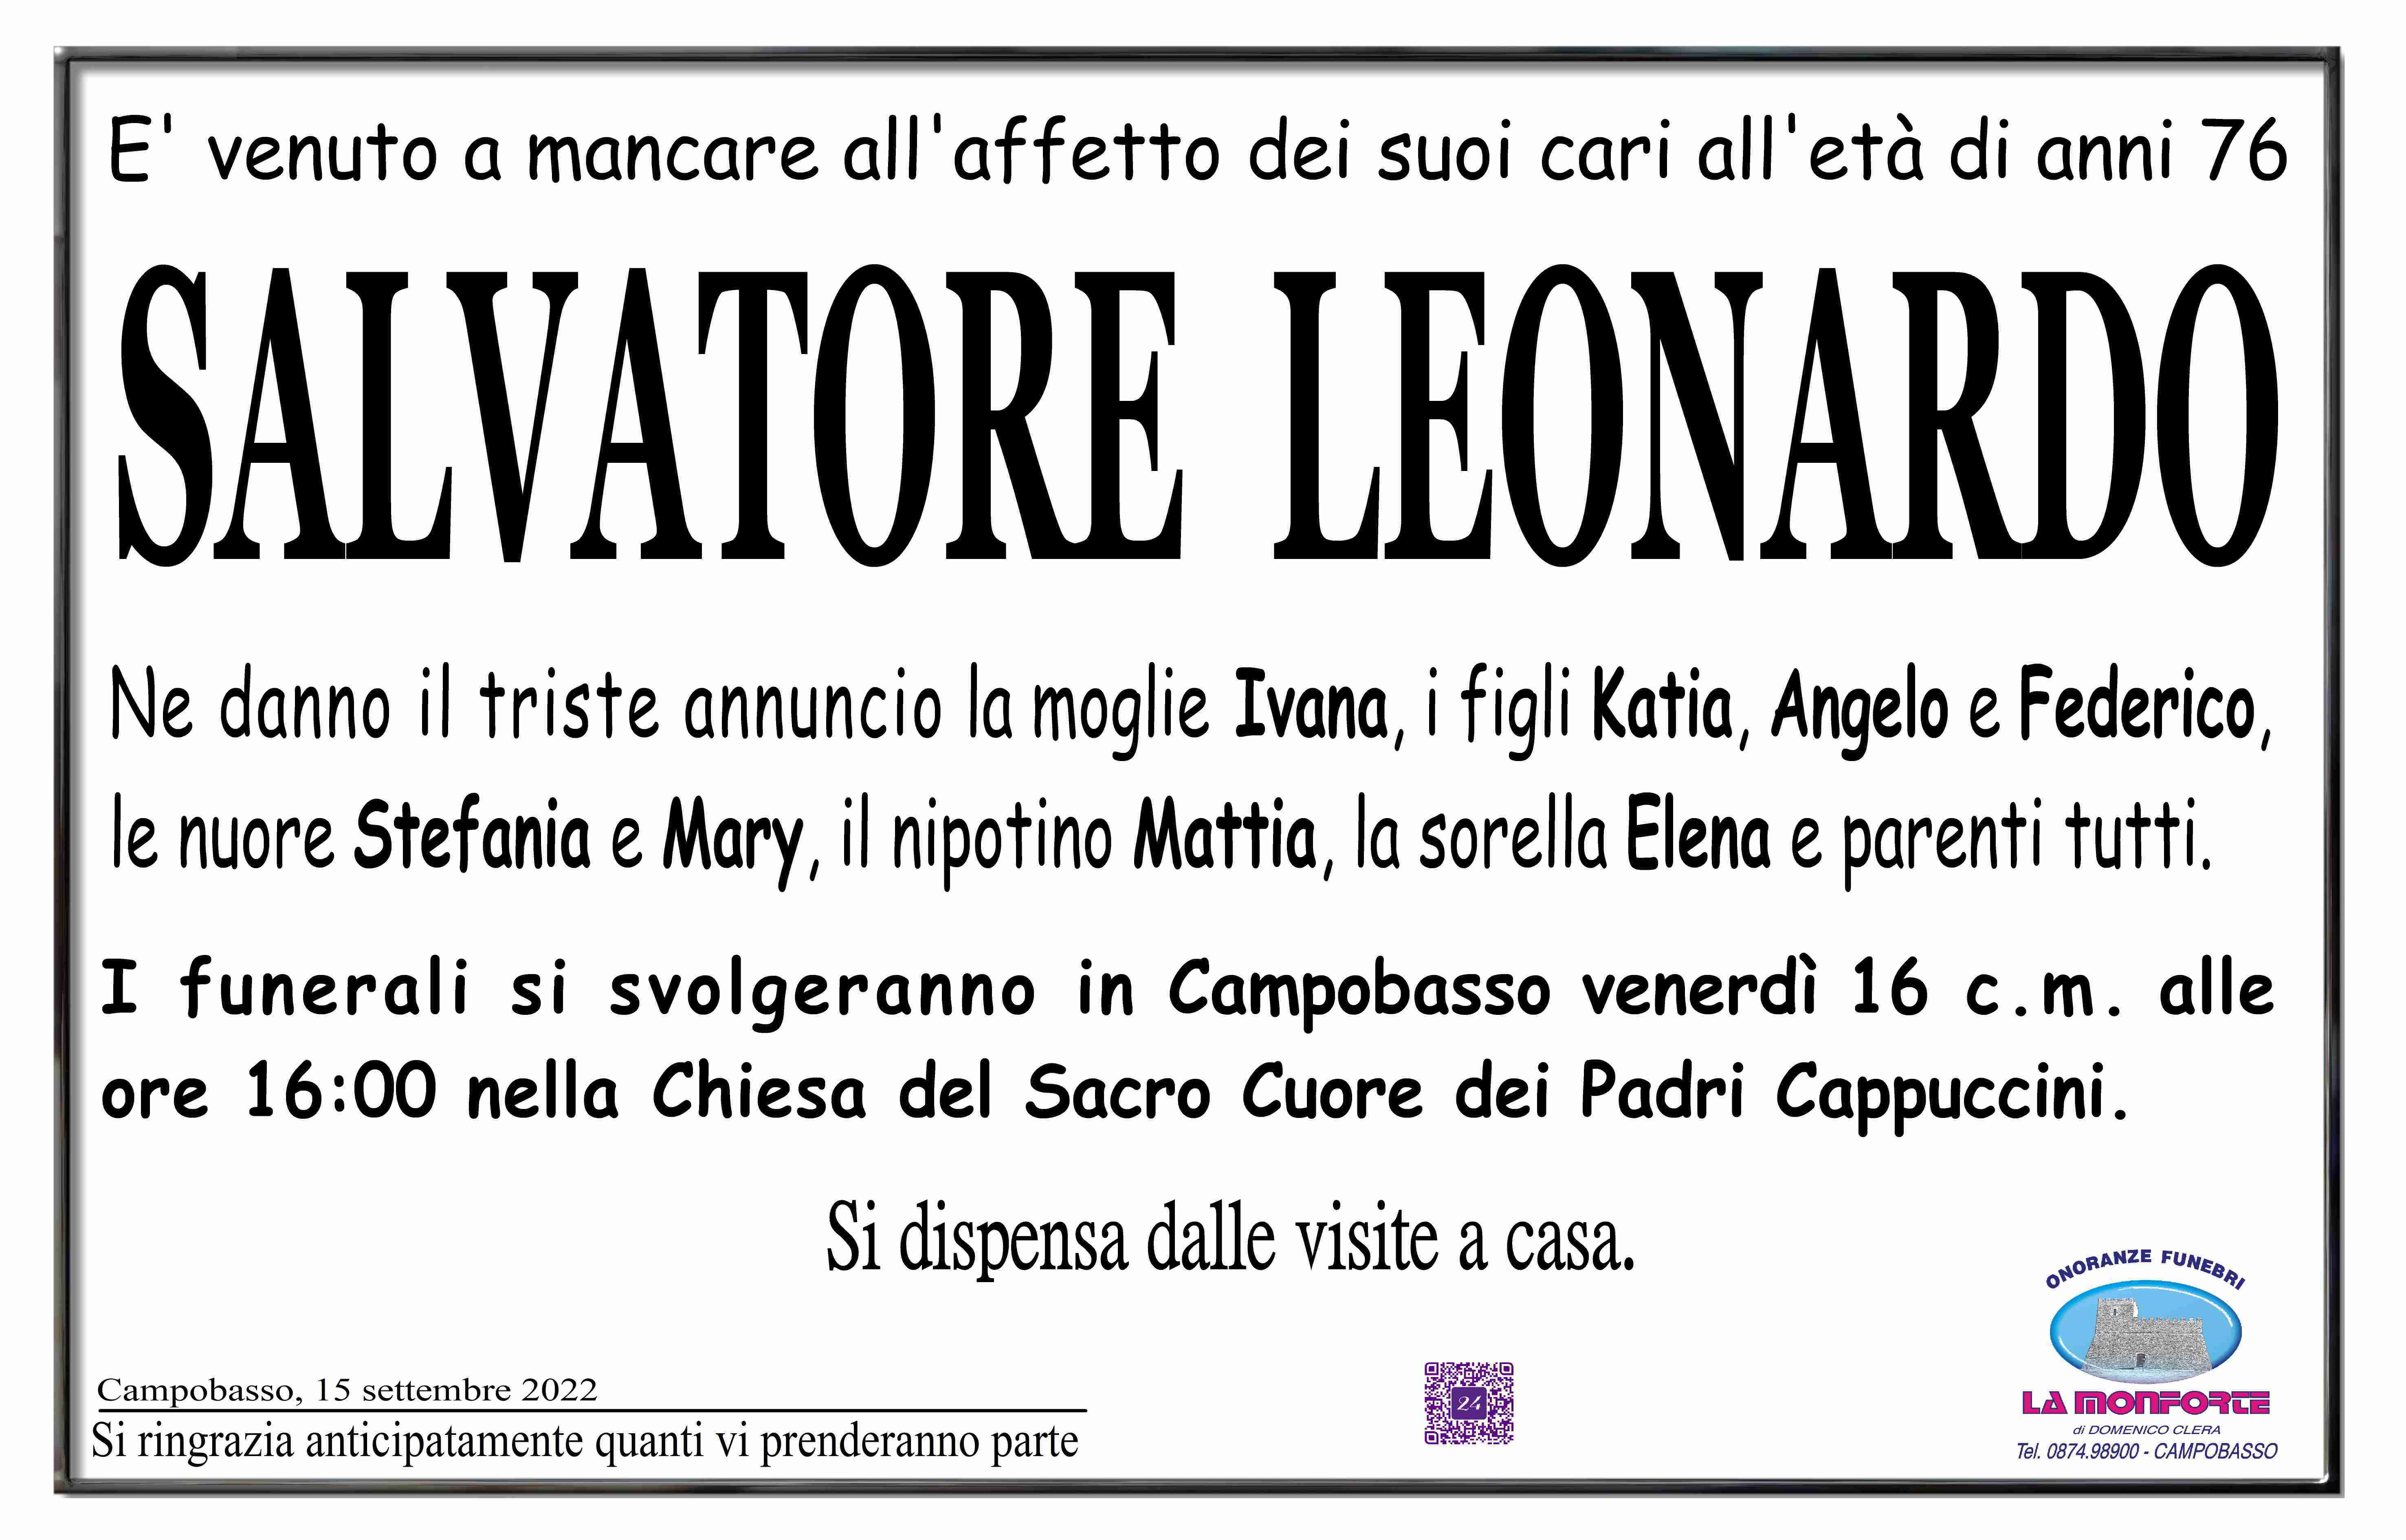 Salvatore Leonardo